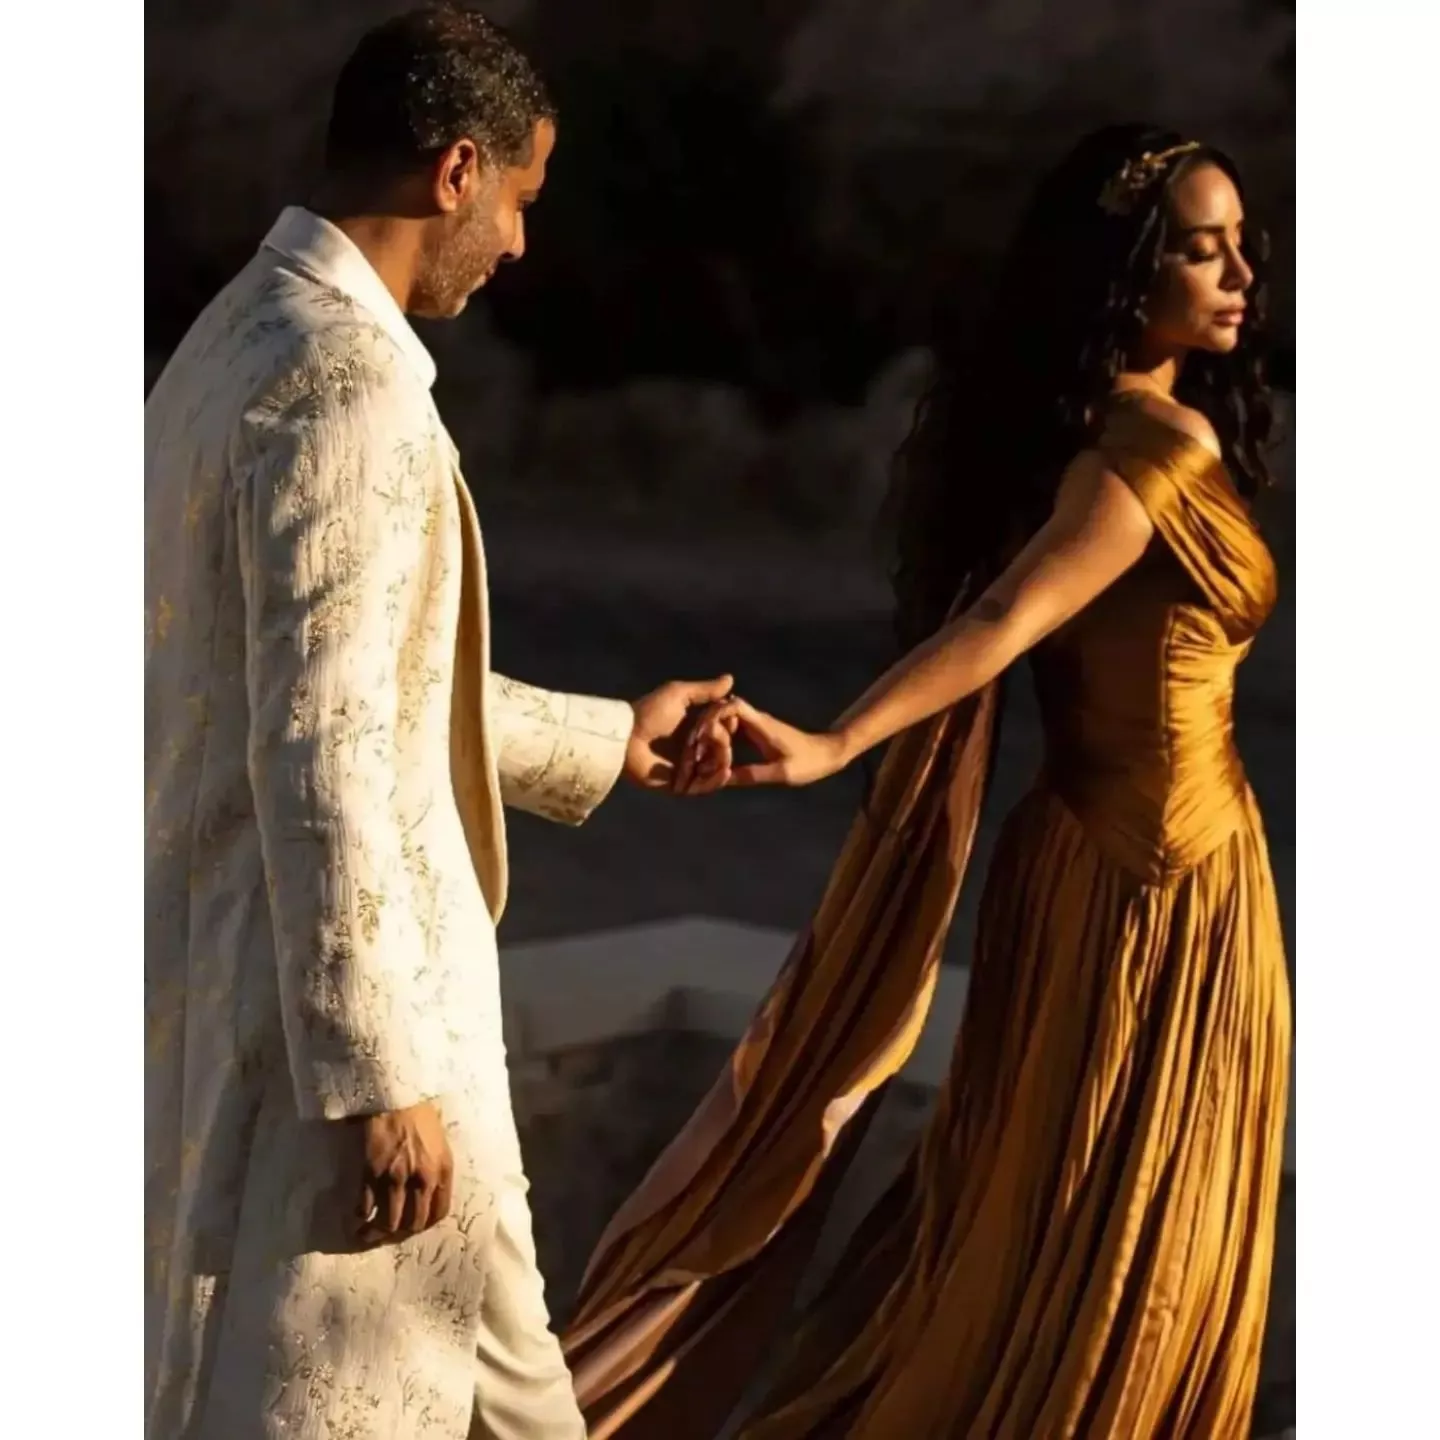 صور بسنت شوقي ومحمد فراج في ليلة الحنة: عروسه إغريقية ساحرة!